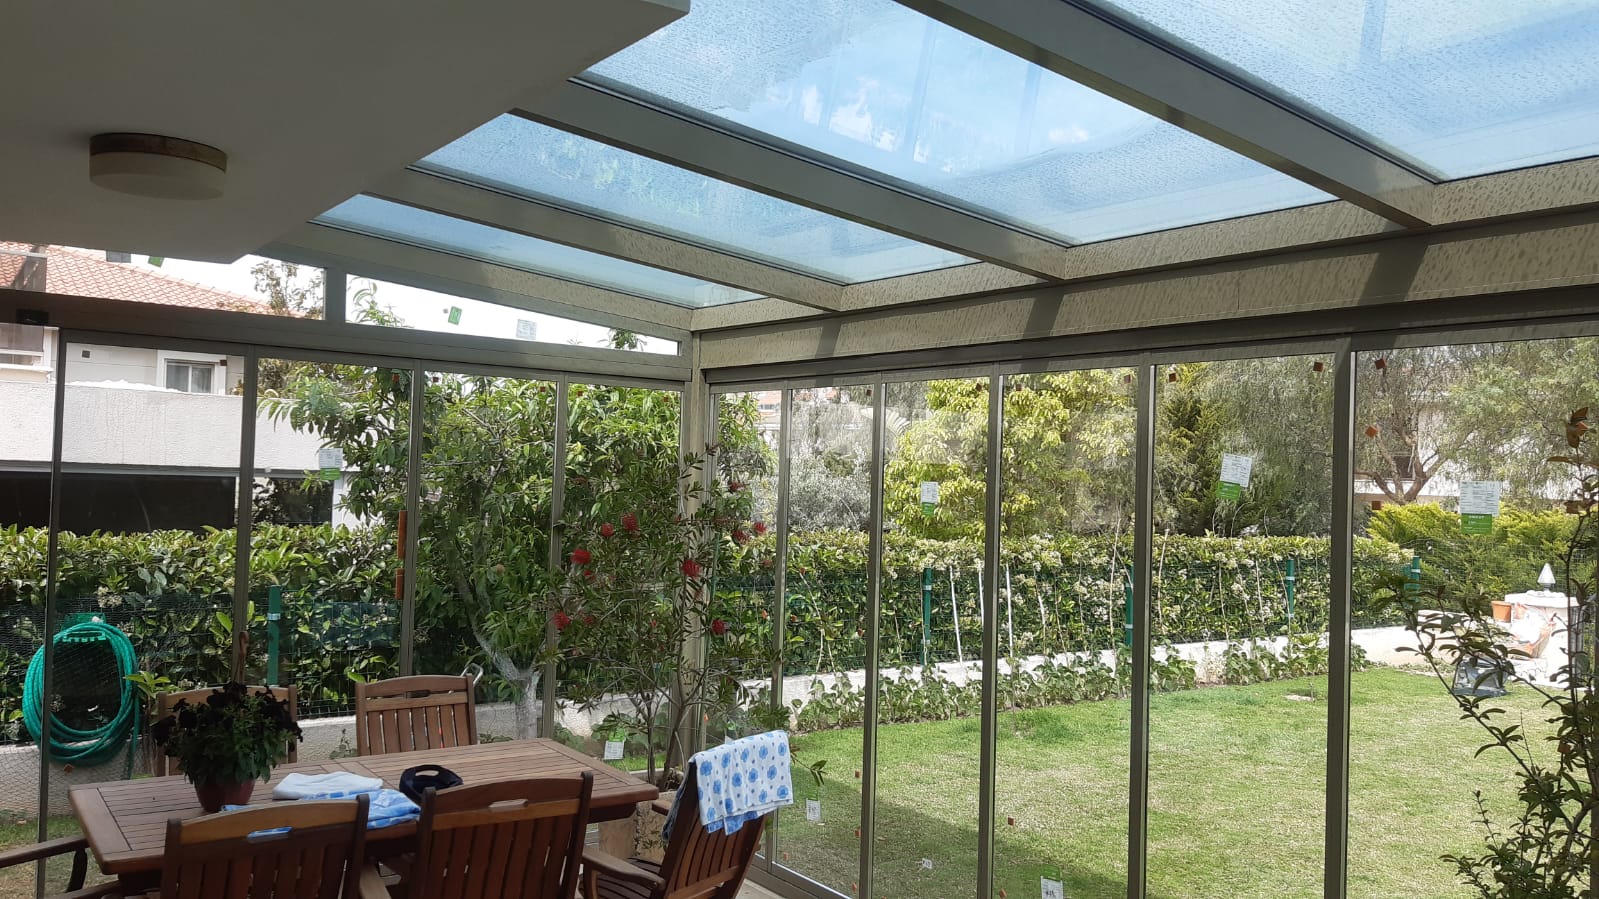 İzmir Çeşme Alaçatı'daki müşterimizin villasına uyguladığımız Kış bahçesi (Veranda) ve Albert Genau marka ısıcamlı katlanır cam sistemi